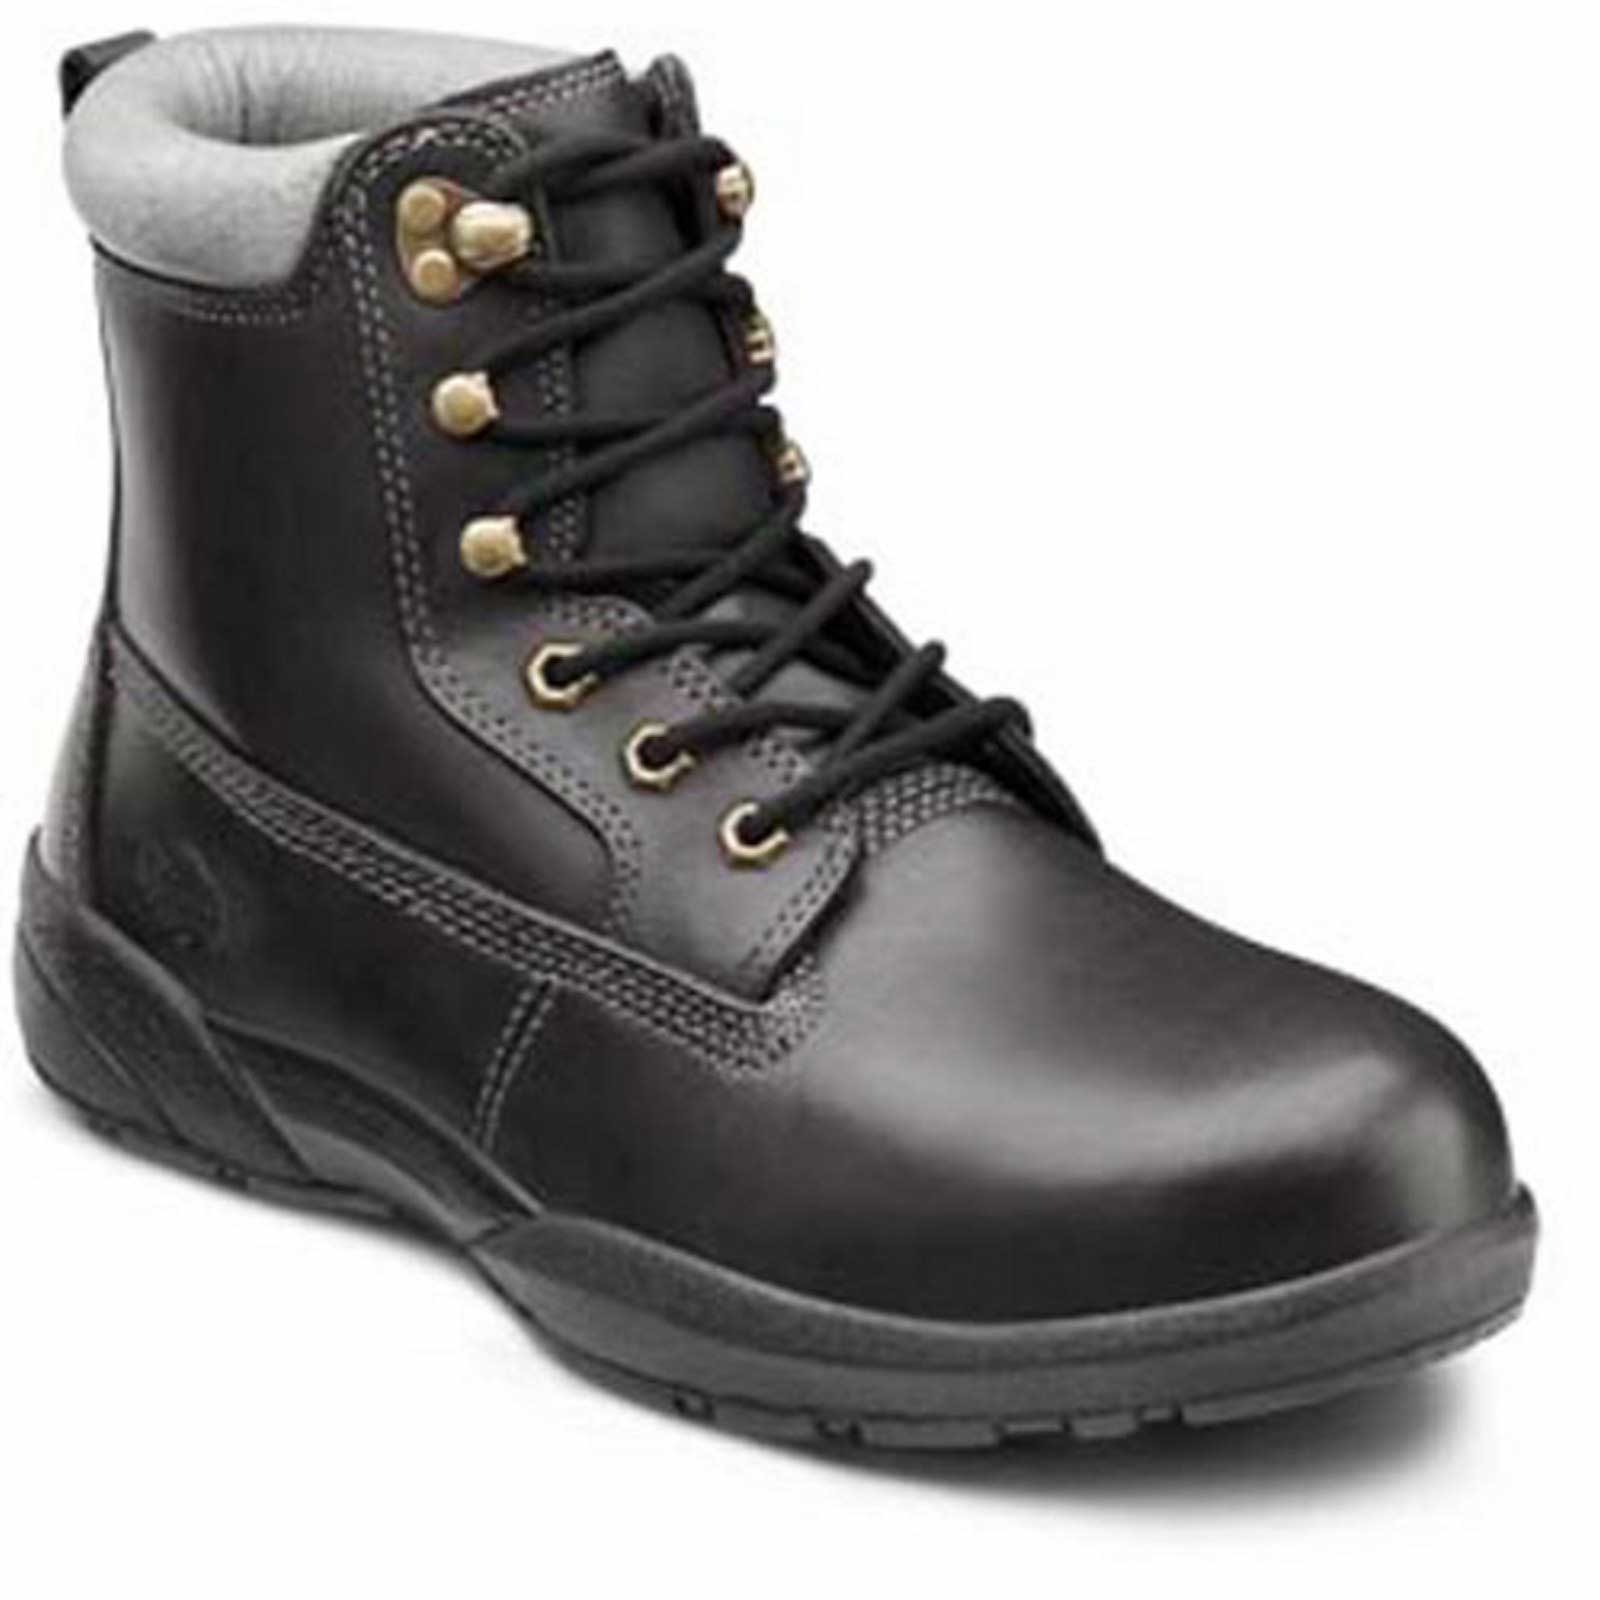 heel protectors for work boots